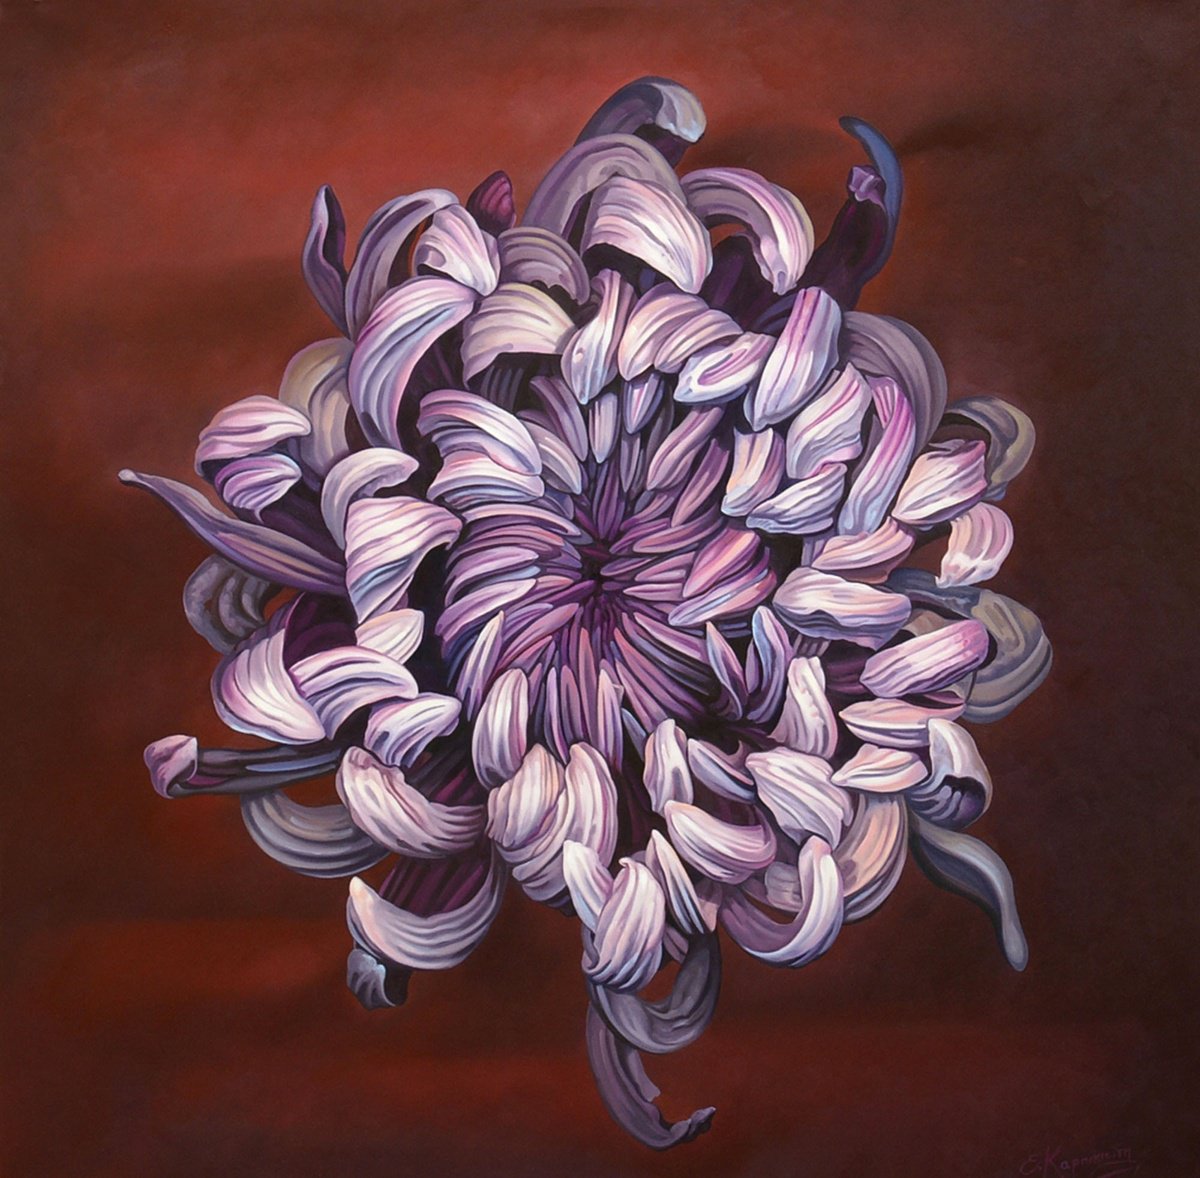 40 Purple Flower / Large Floral Oil Painting on canvas by Irini Karpikioti